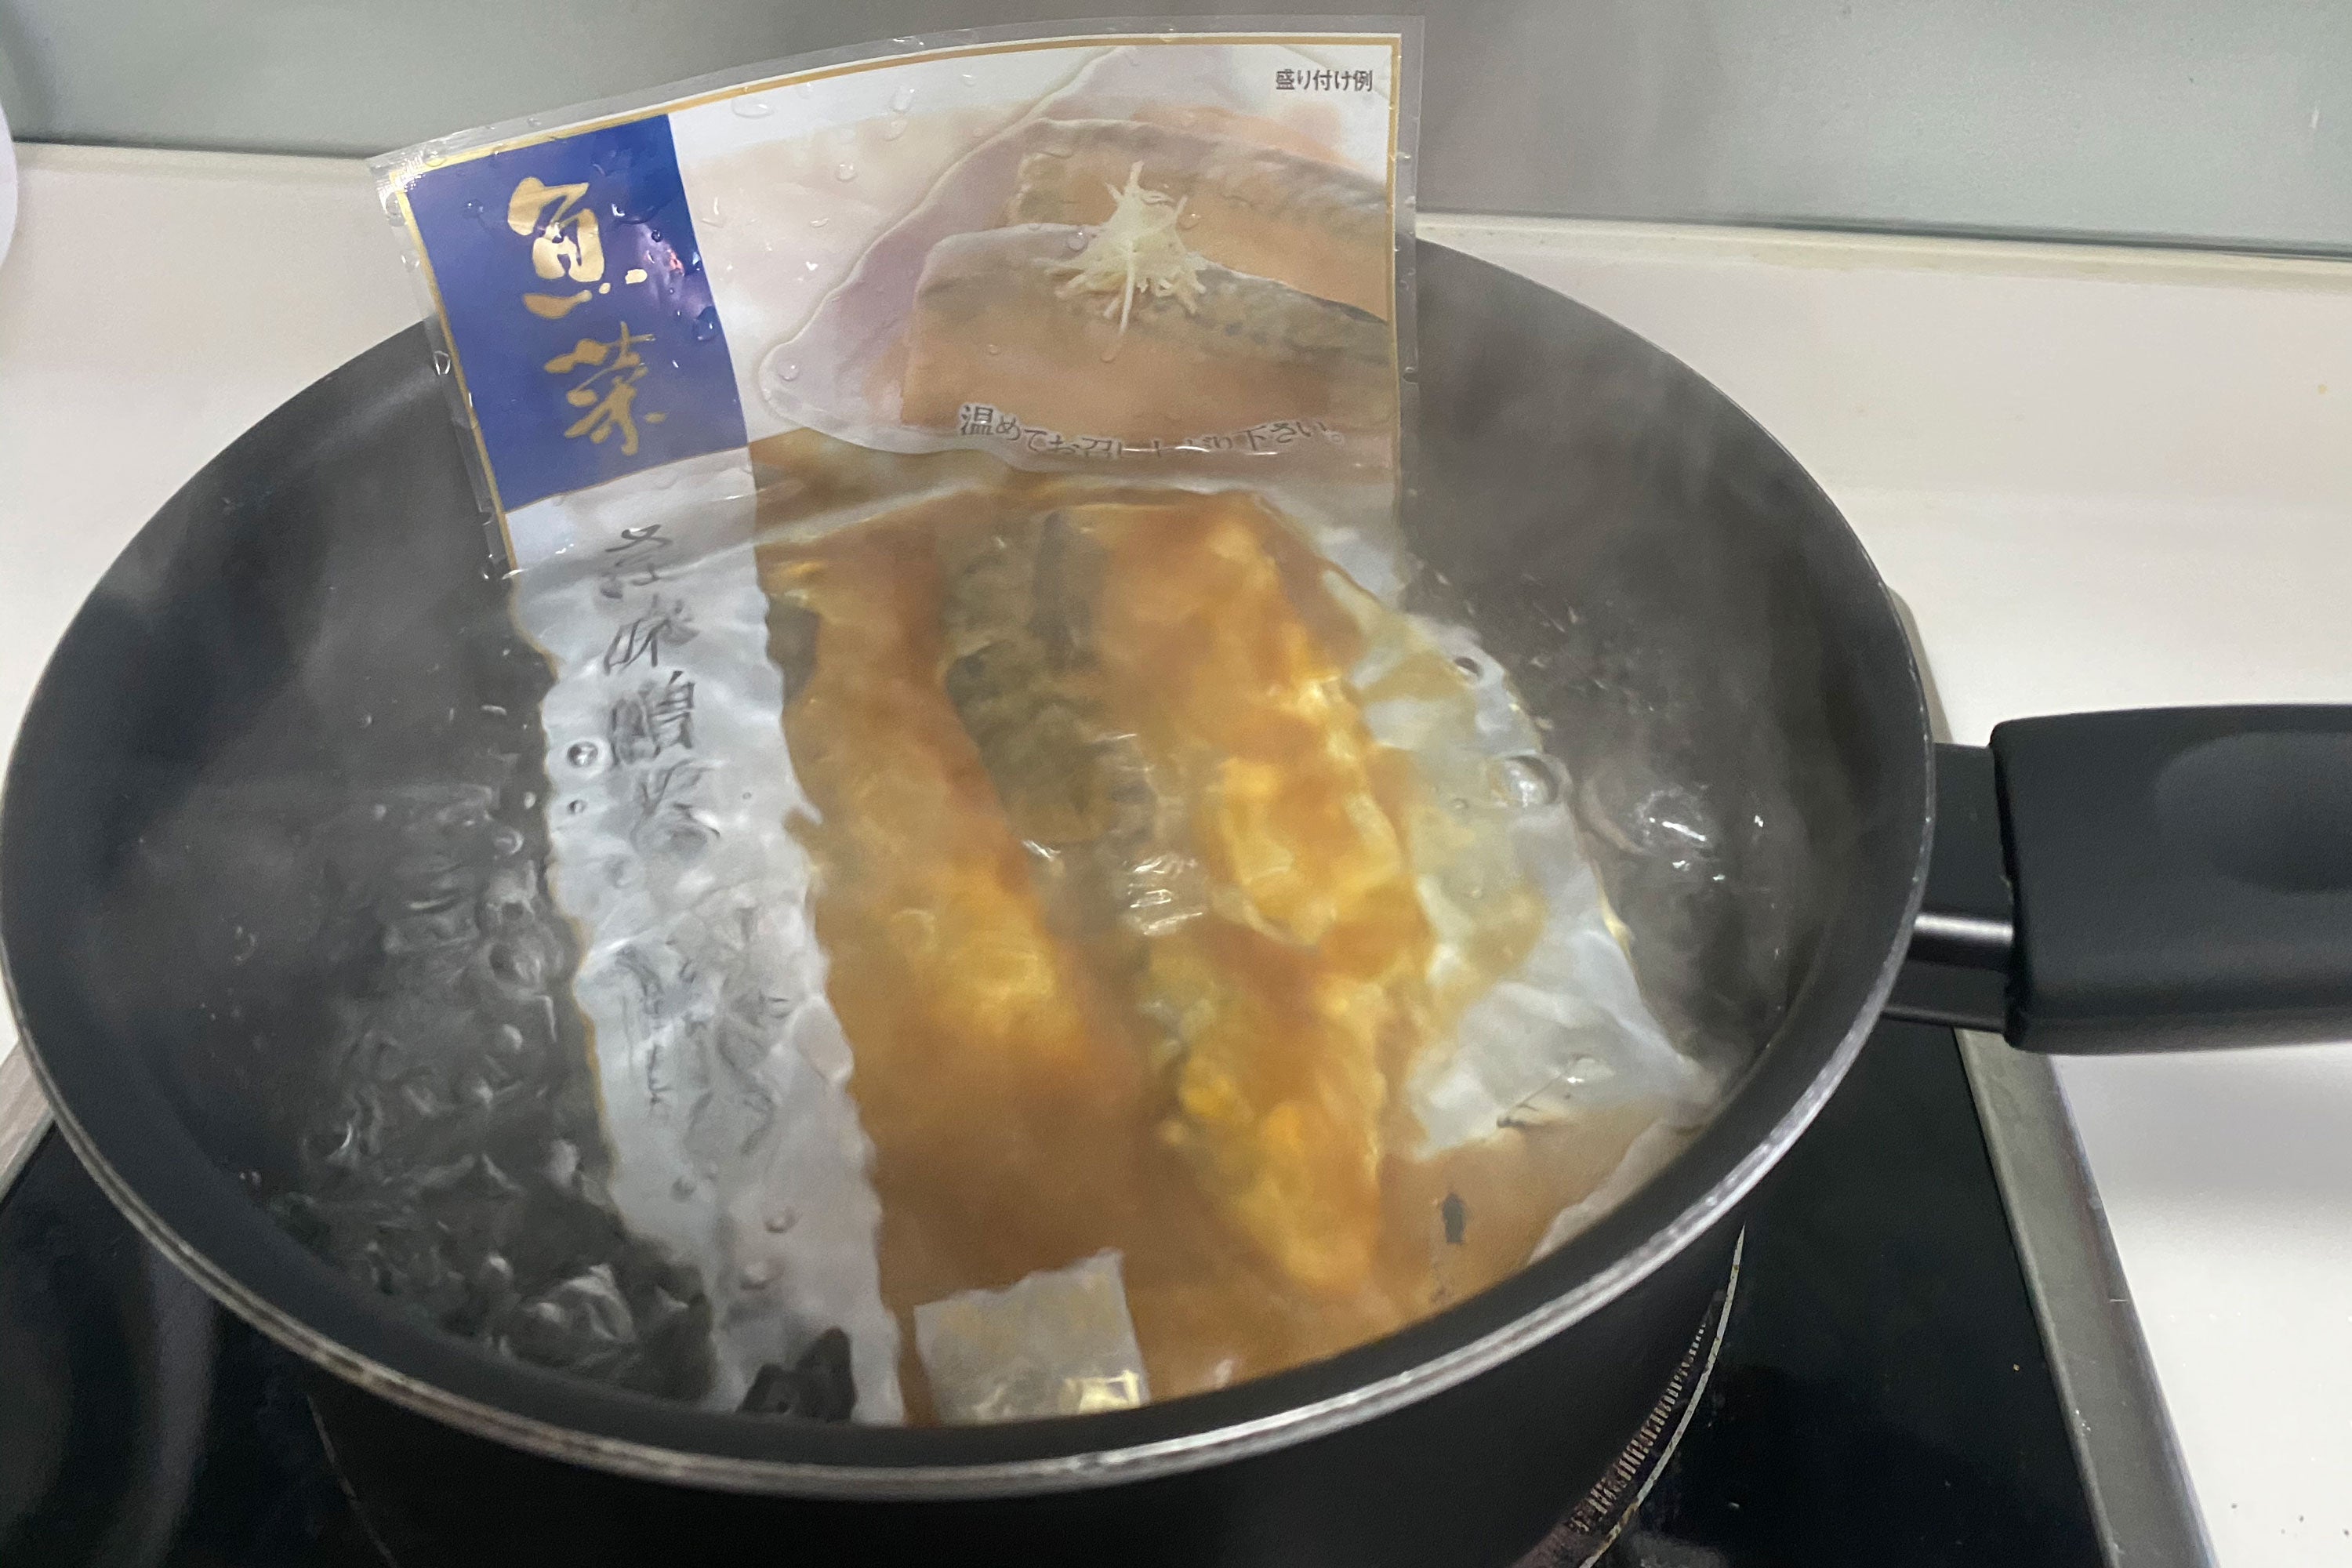 Saba misoni boiling